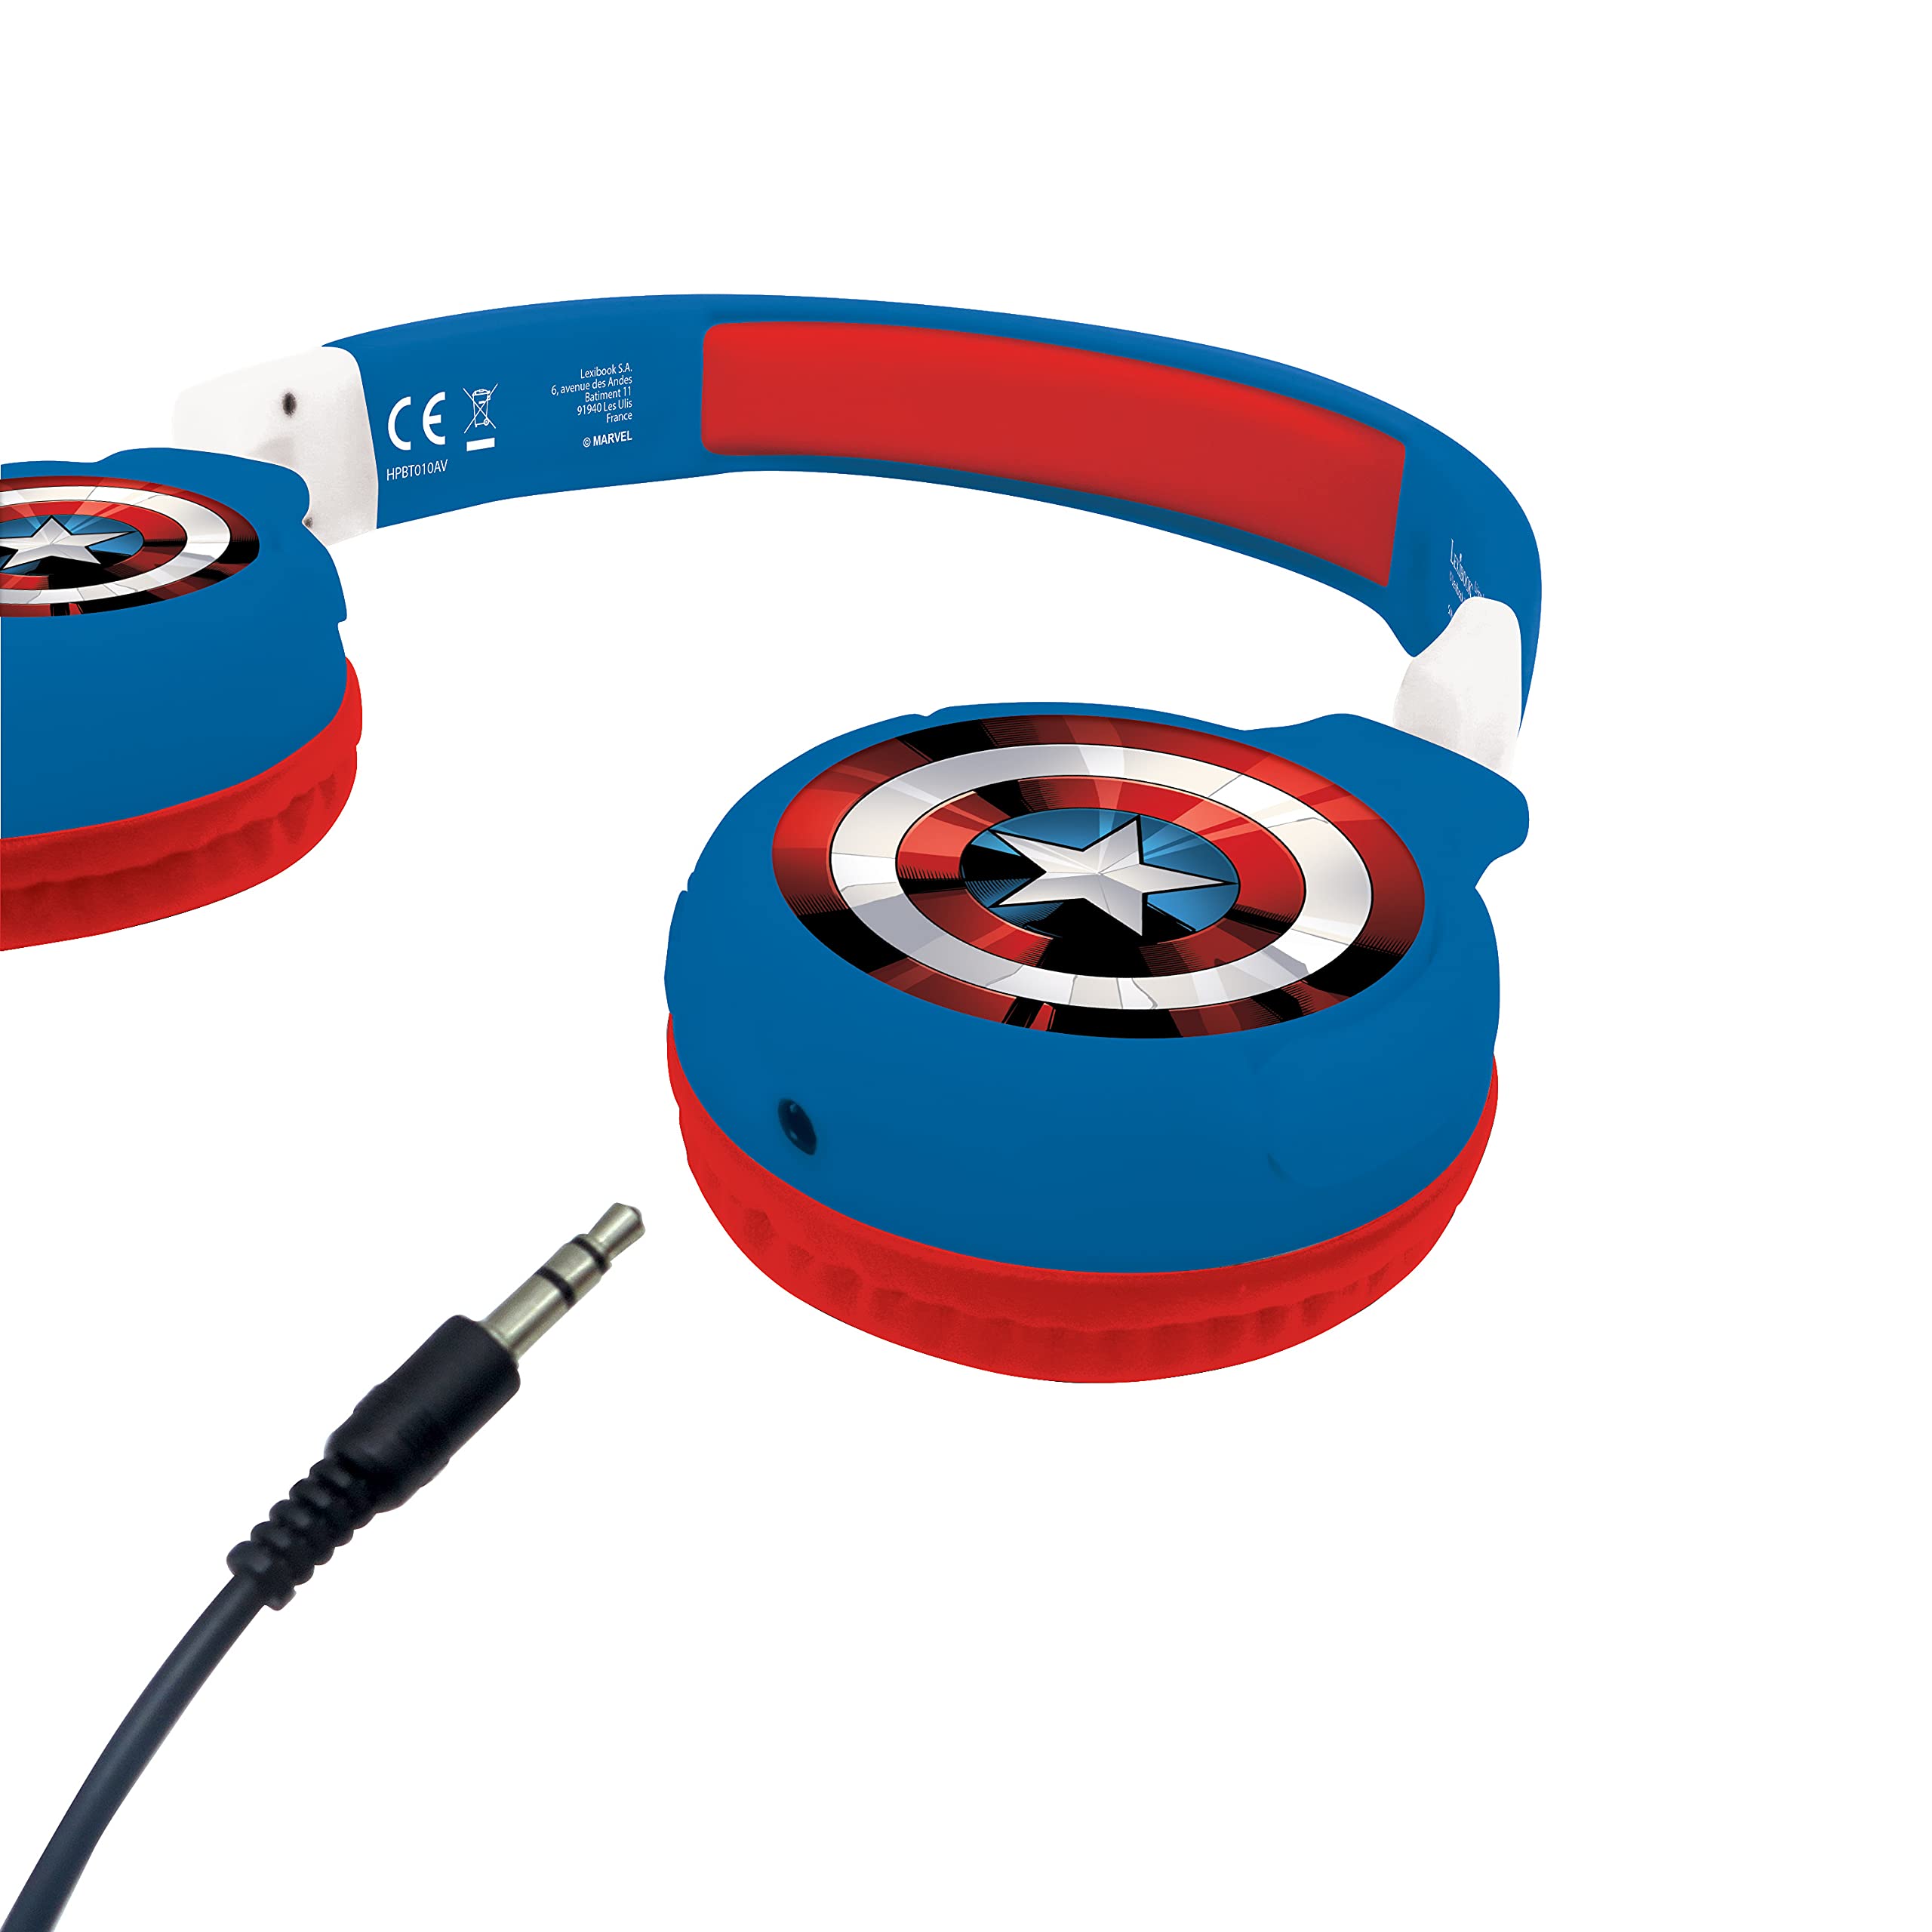 LEXiBOOK Avengers Marvel 2-in-1 Bluetooth Headphones for Kids - Stereo Wireless Wired, Kids Safe, Foldable, Adjustable, red/Blue, HPBT010AV